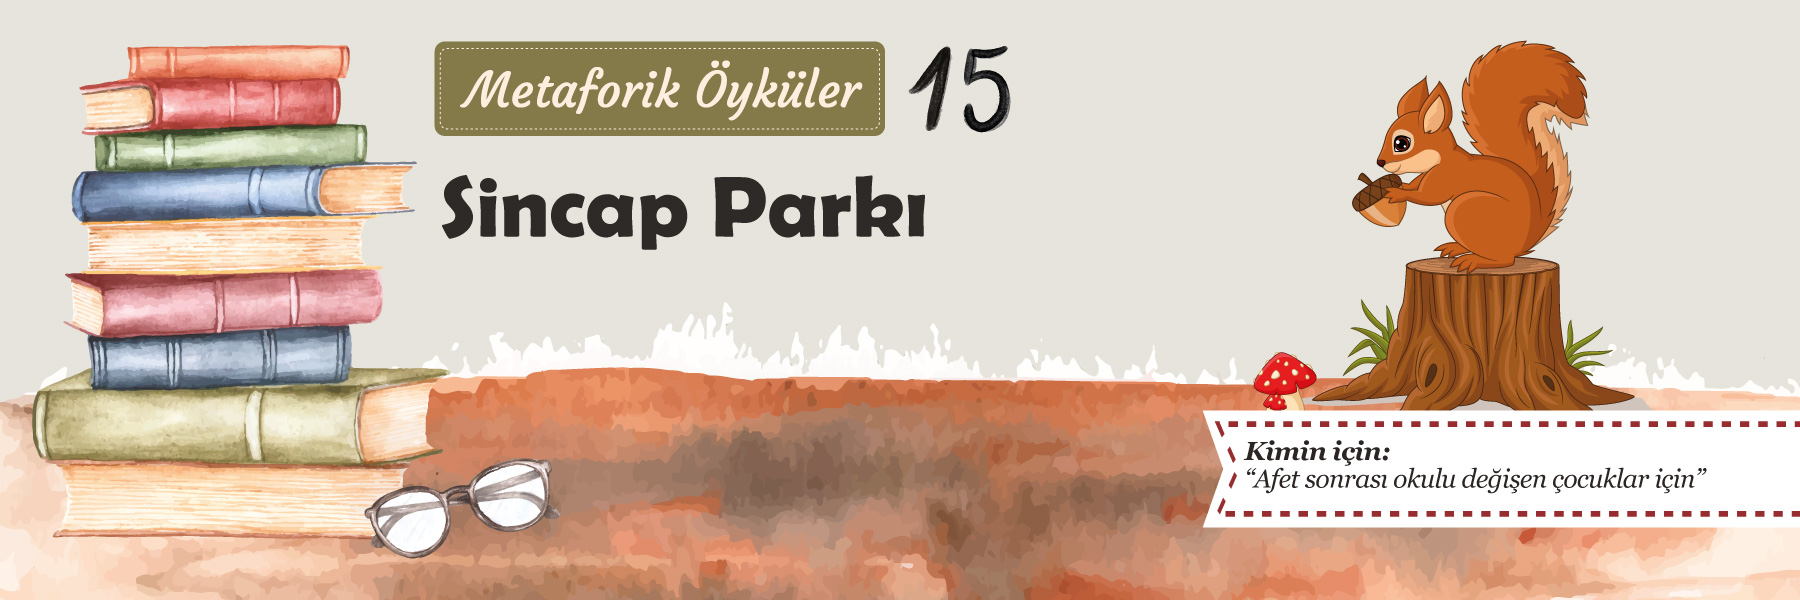 Sincap Parkı - Metaforik Öyküler